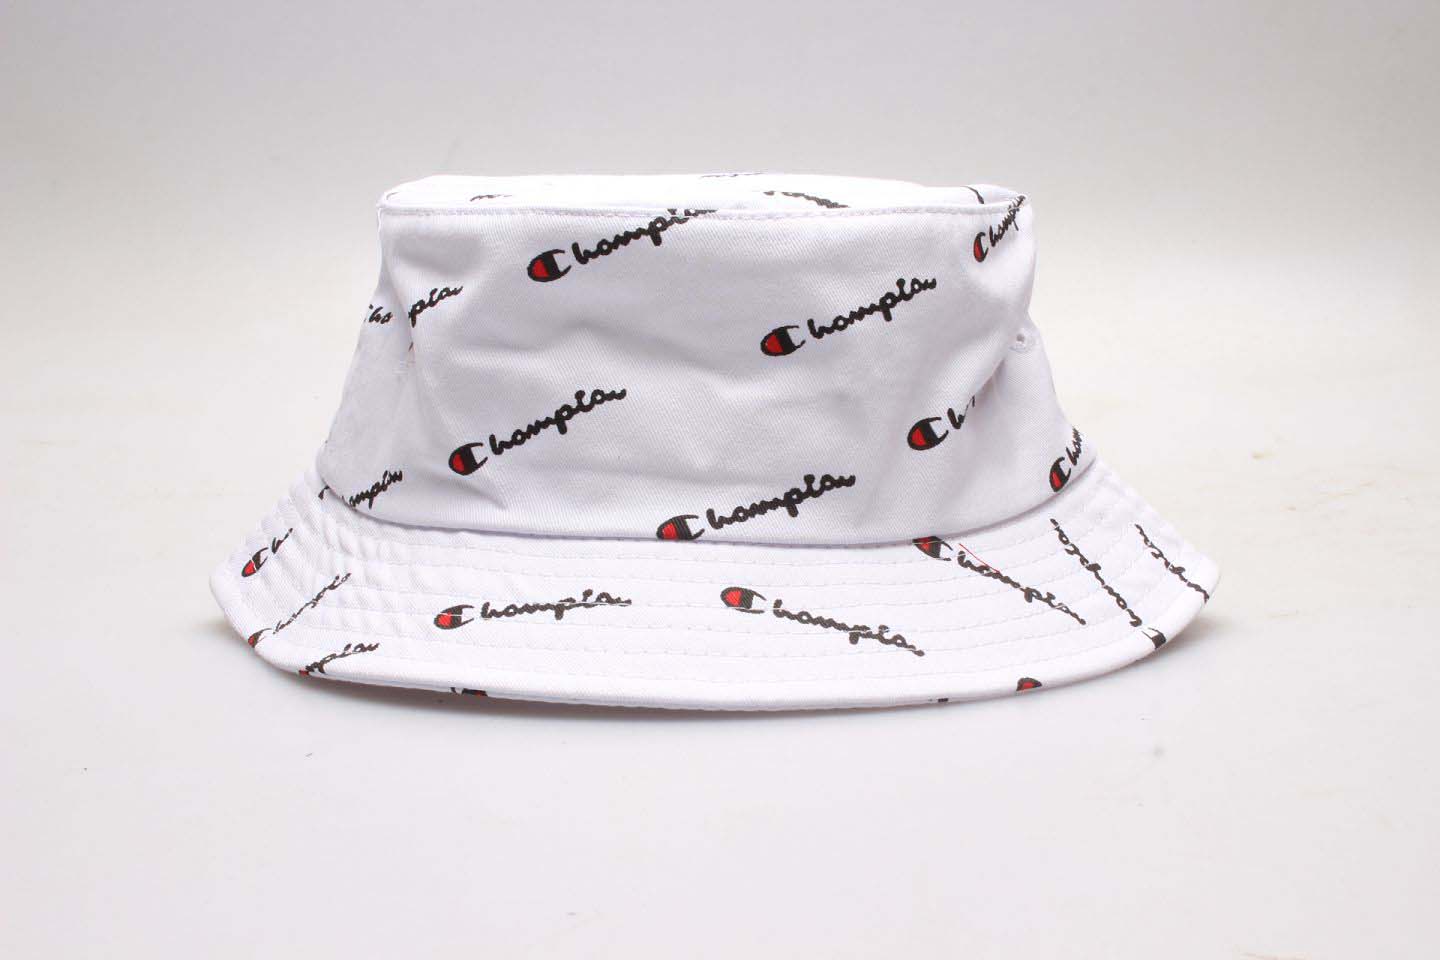 Champion Stitched White Fashion Sports Wide Brim Hat YP